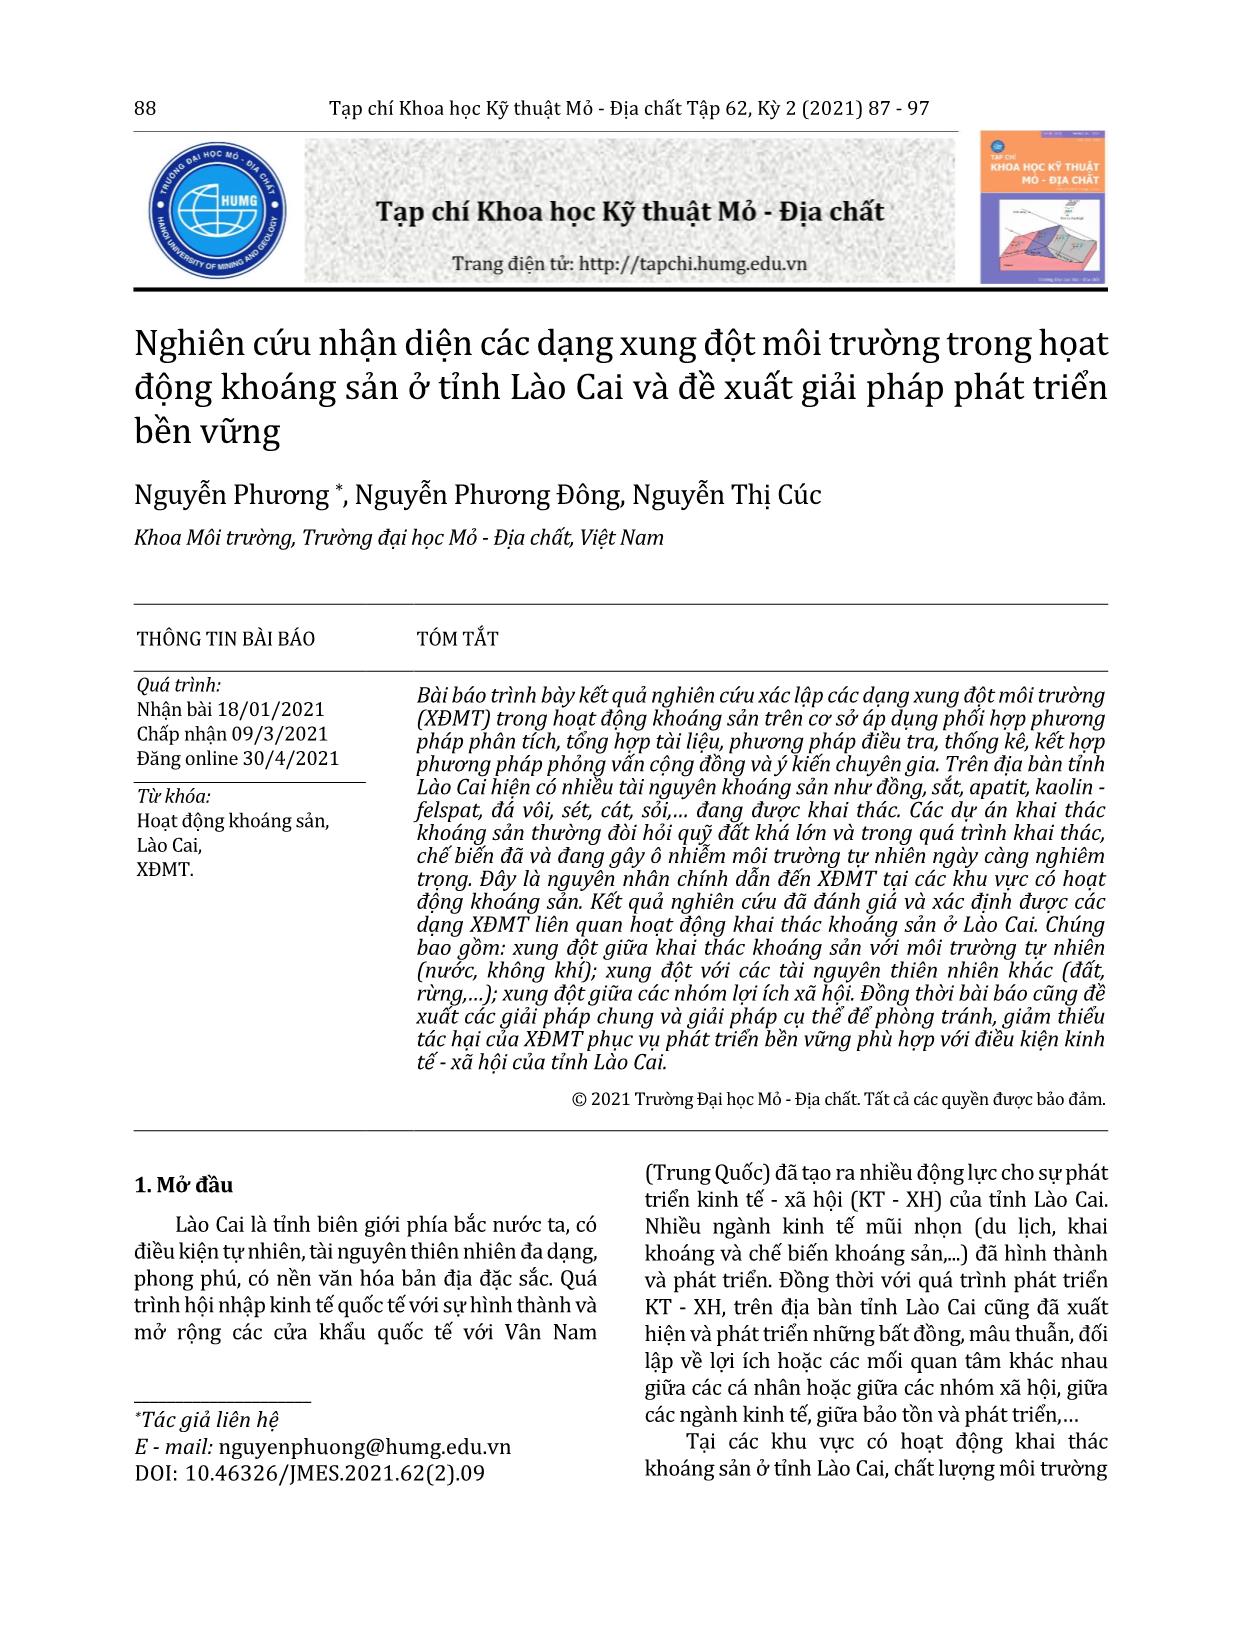 Nghiên cứu nhận diện các dạng xung đột môi trường trong họat động khoáng sản ở tỉnh Lào Cai và đề xuất giải pháp phát triển bền vững trang 2